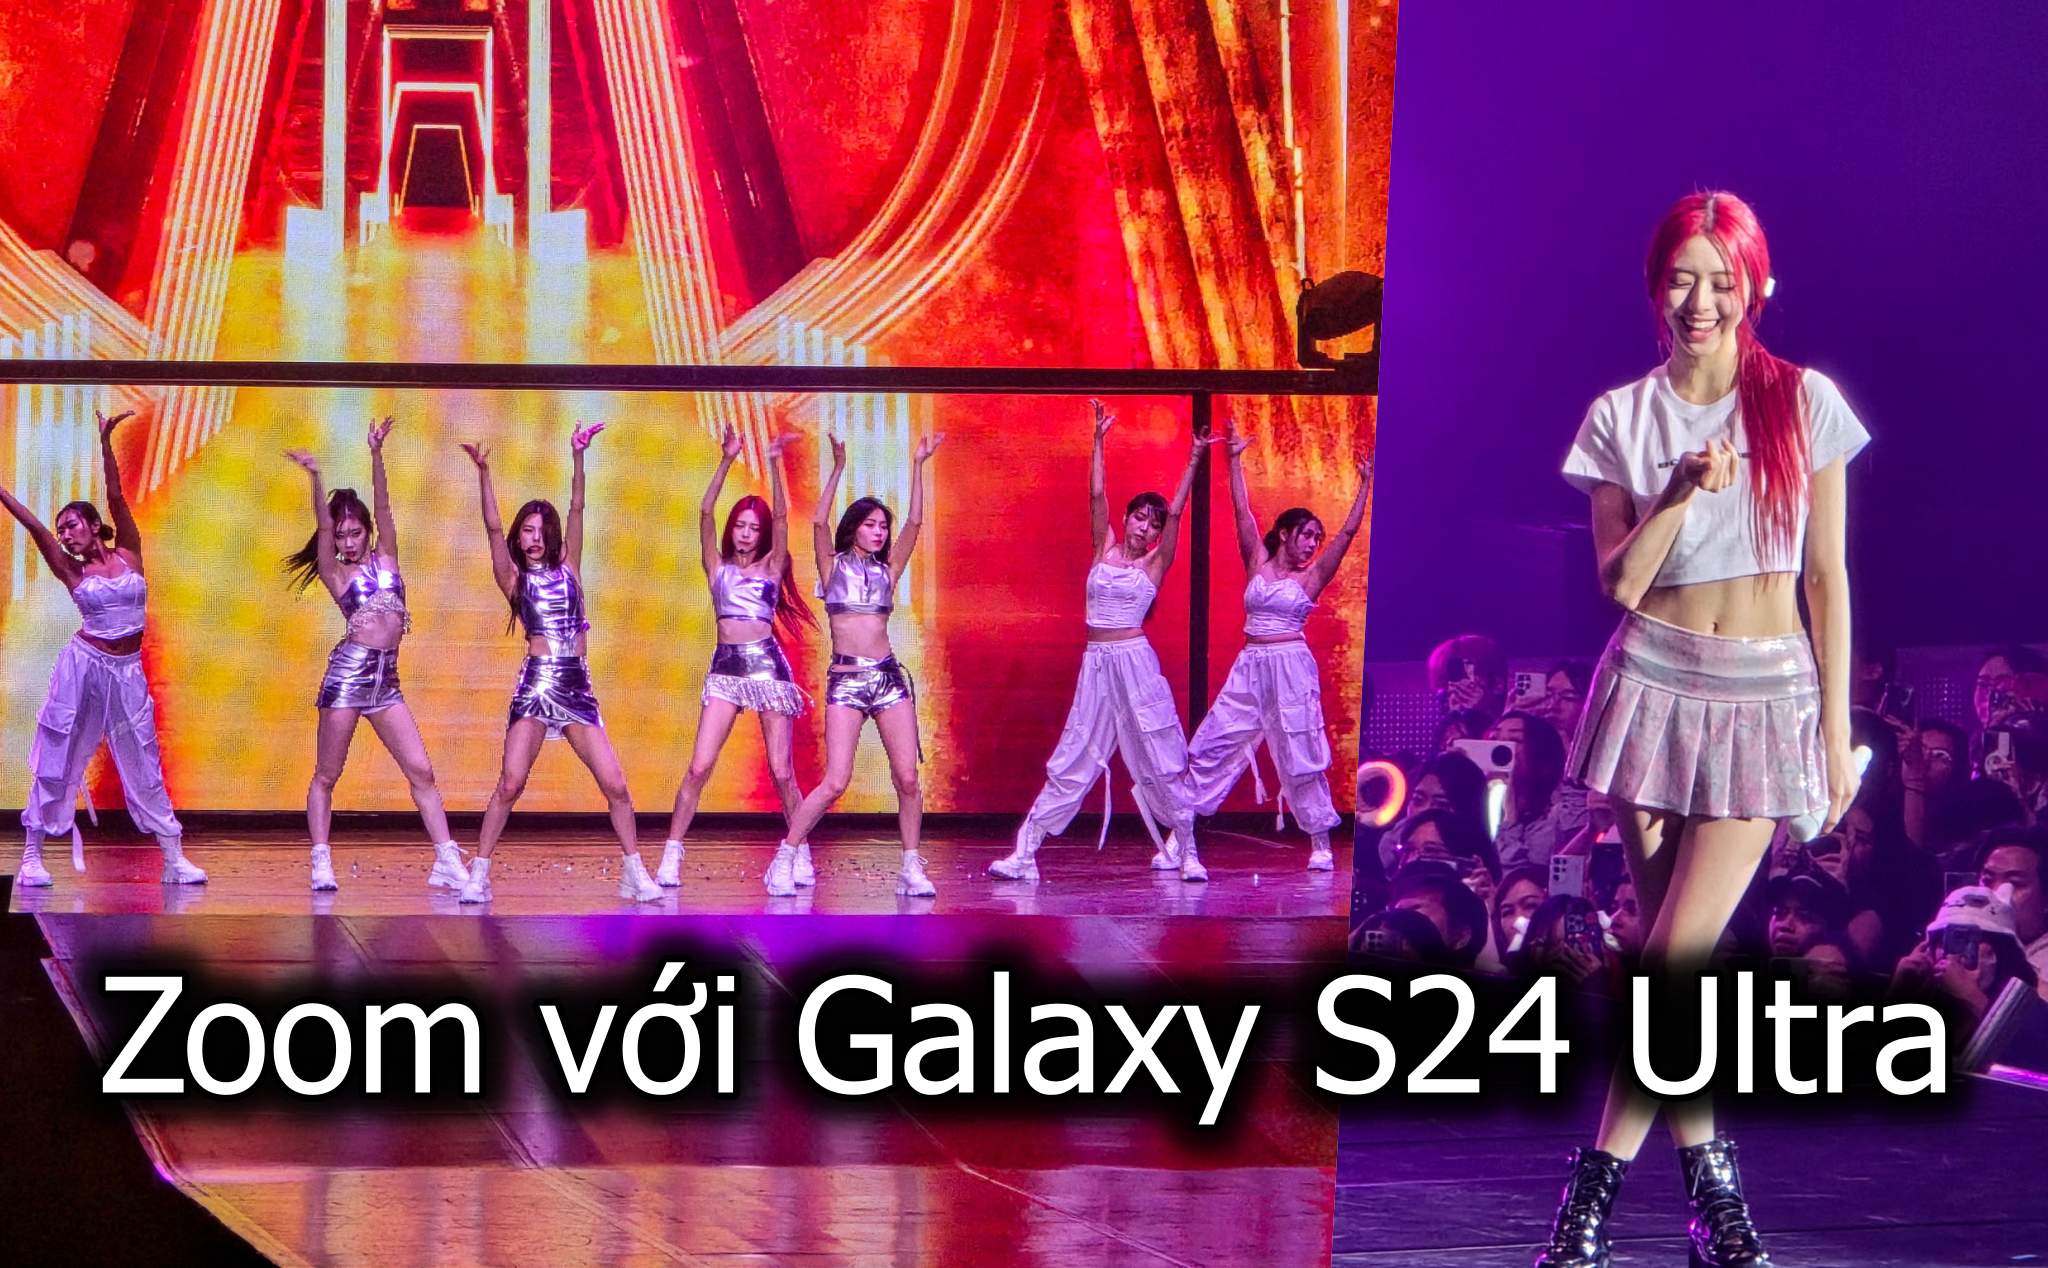 Vì sao cần có 1 chiếc Galaxy S24 Ultra để đi concert của idol?